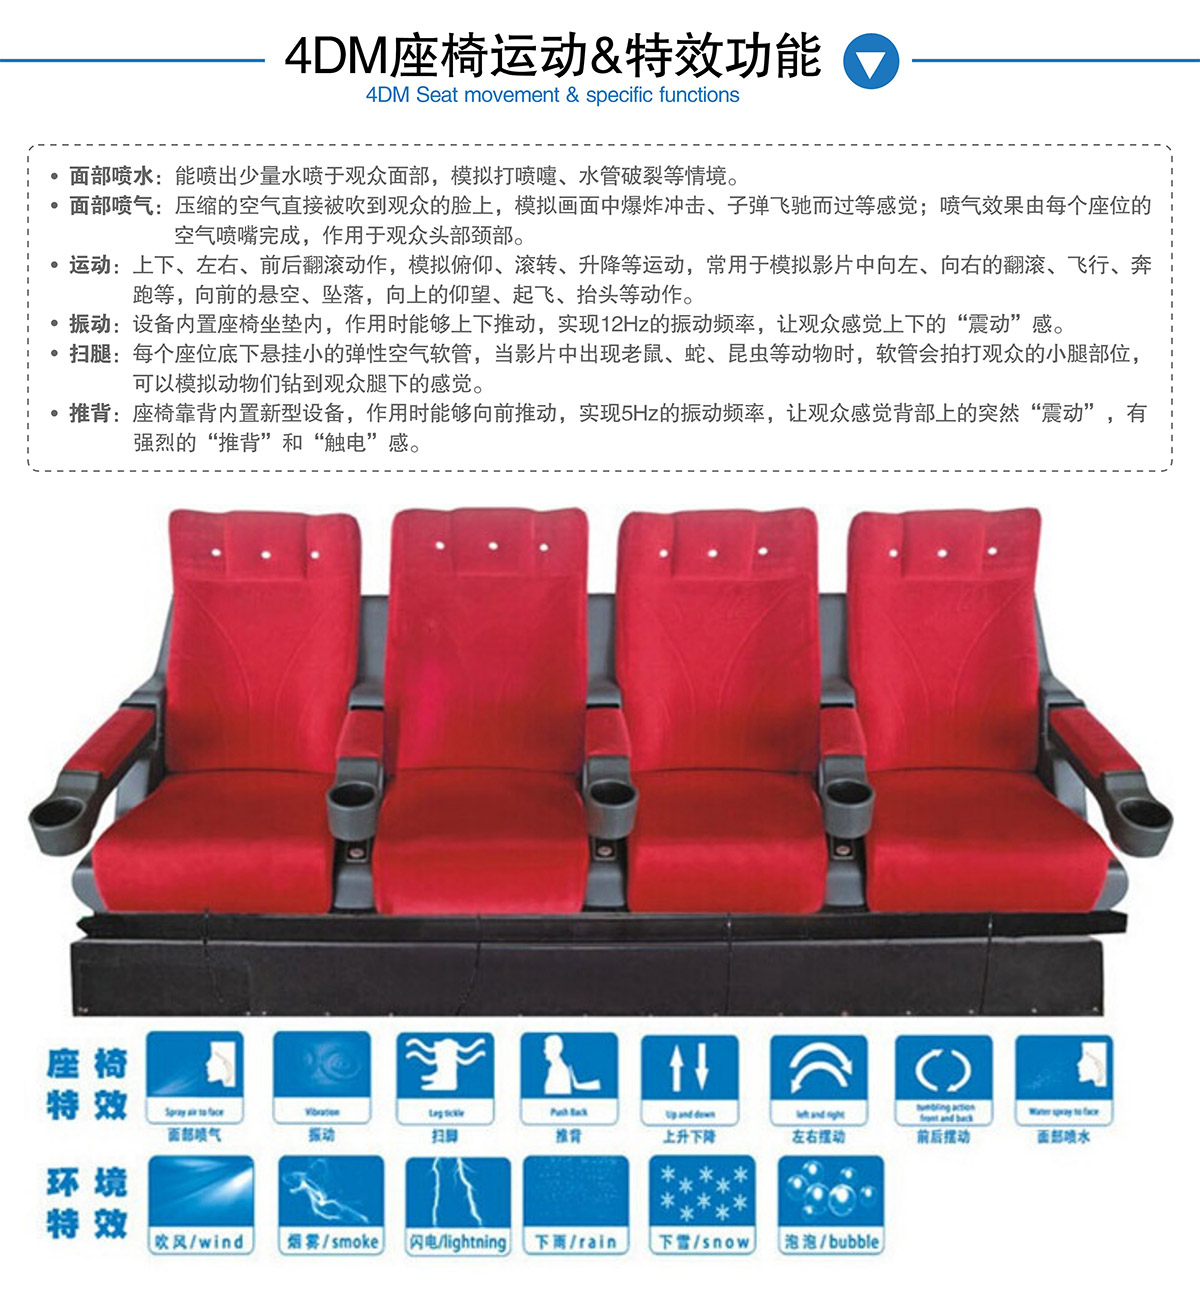 奇影幻境4DM座椅运动和特效功能.jpg